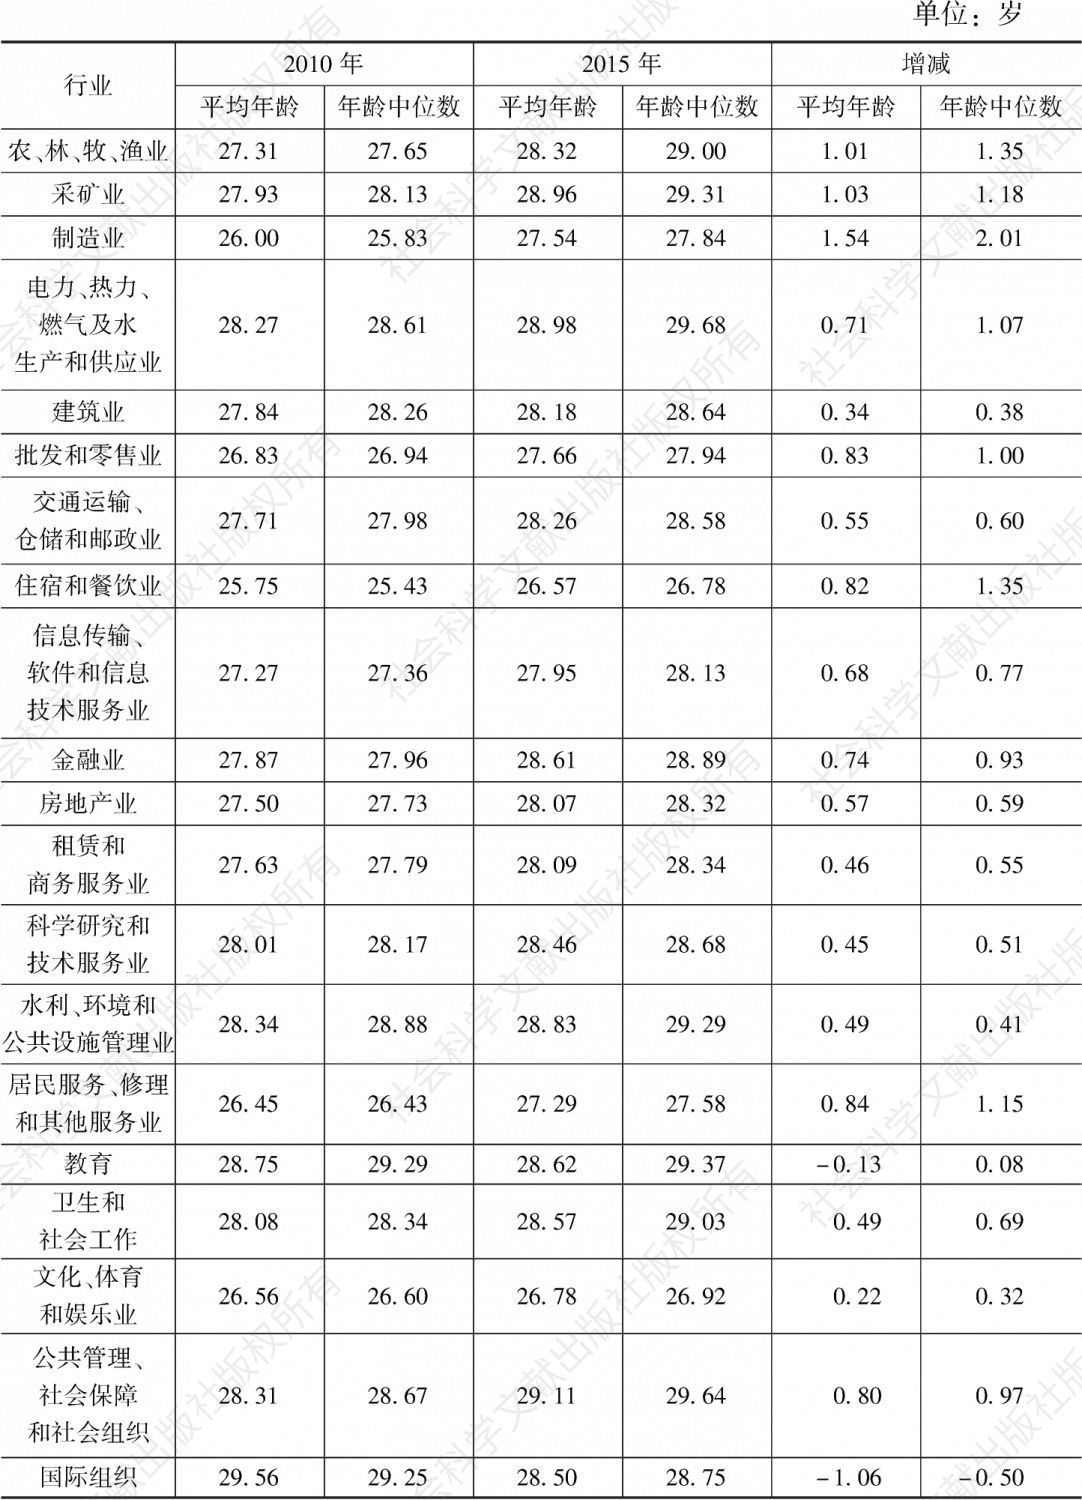 表19 2010年、2015年广州青年就业人口分行业的平均年龄与年龄中位数及其变化